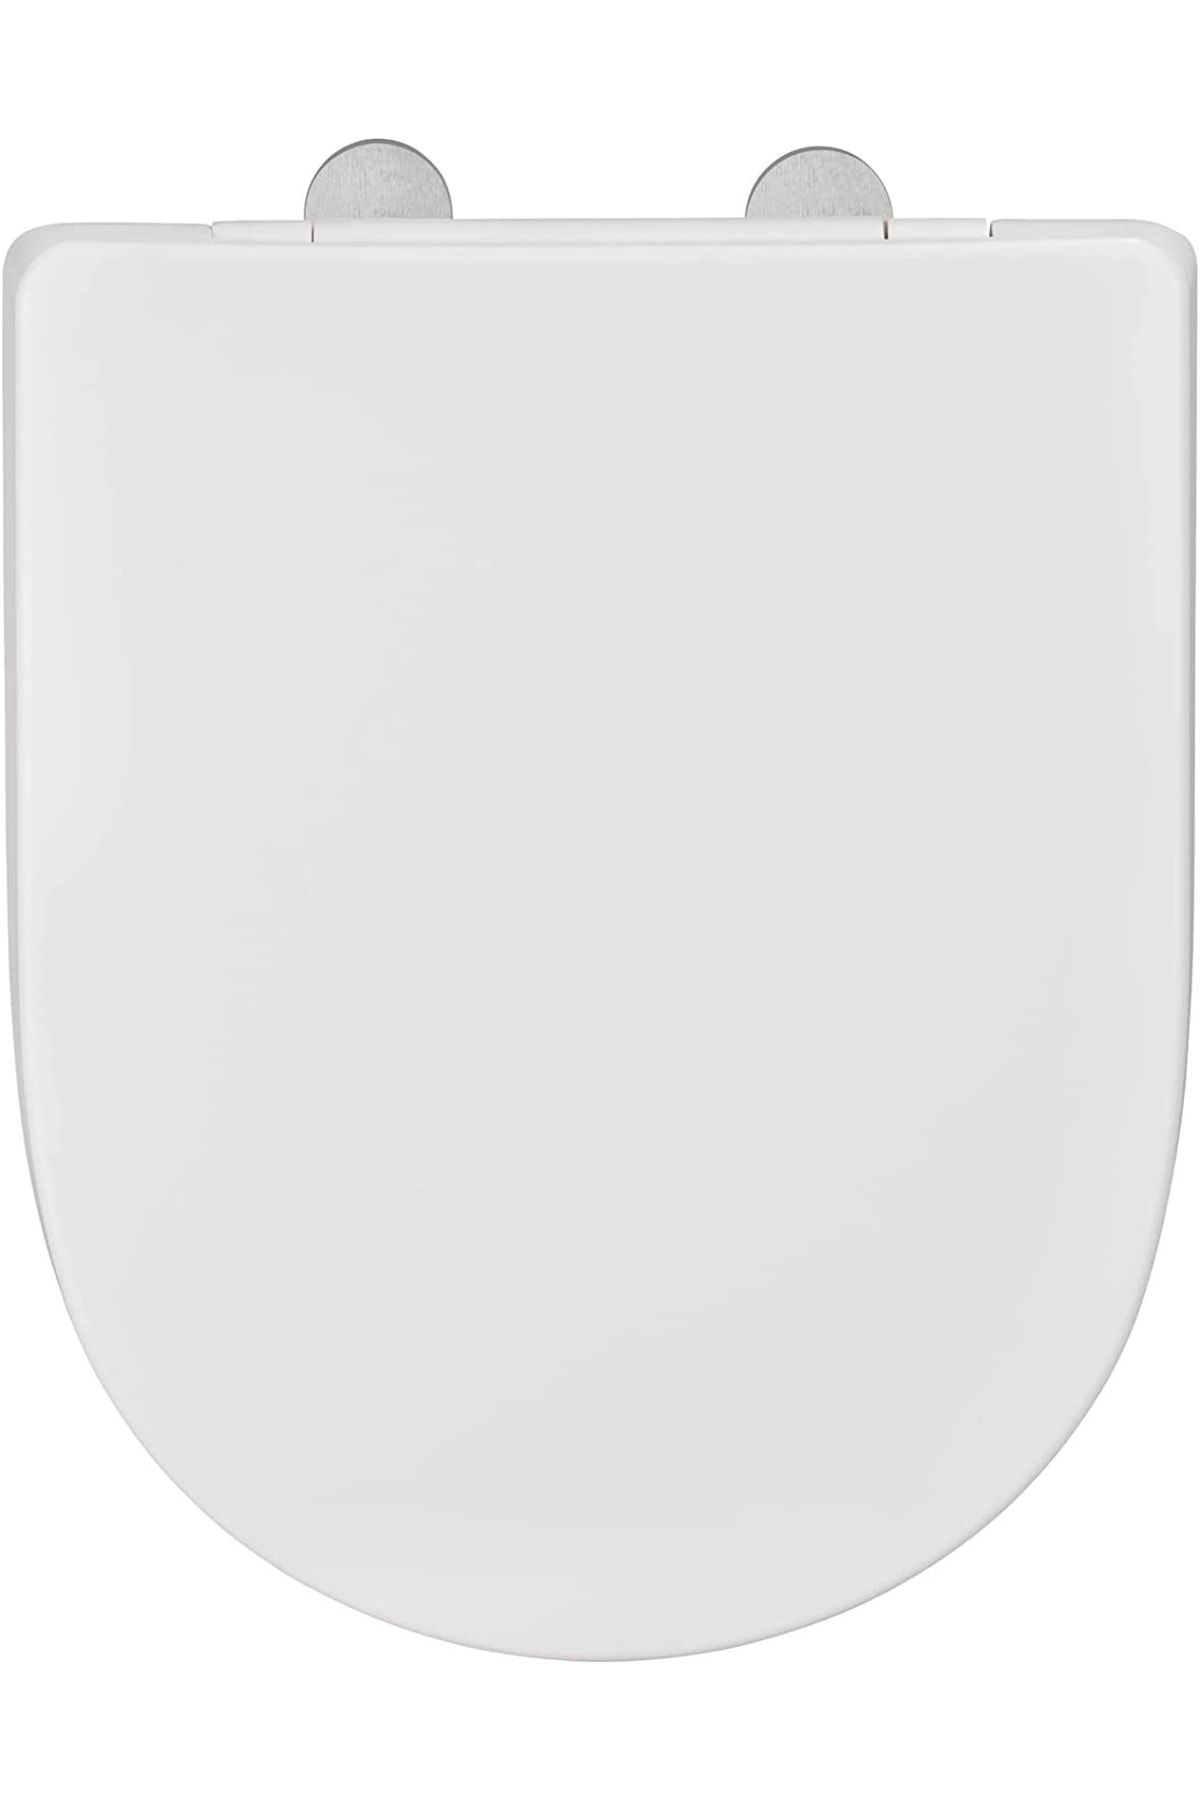 Wenko Klozet Kapağı Premium No. 3, Otomatik Kapanmalı Klozet Oturağı Antibakteriyel Duroplast Beyaz